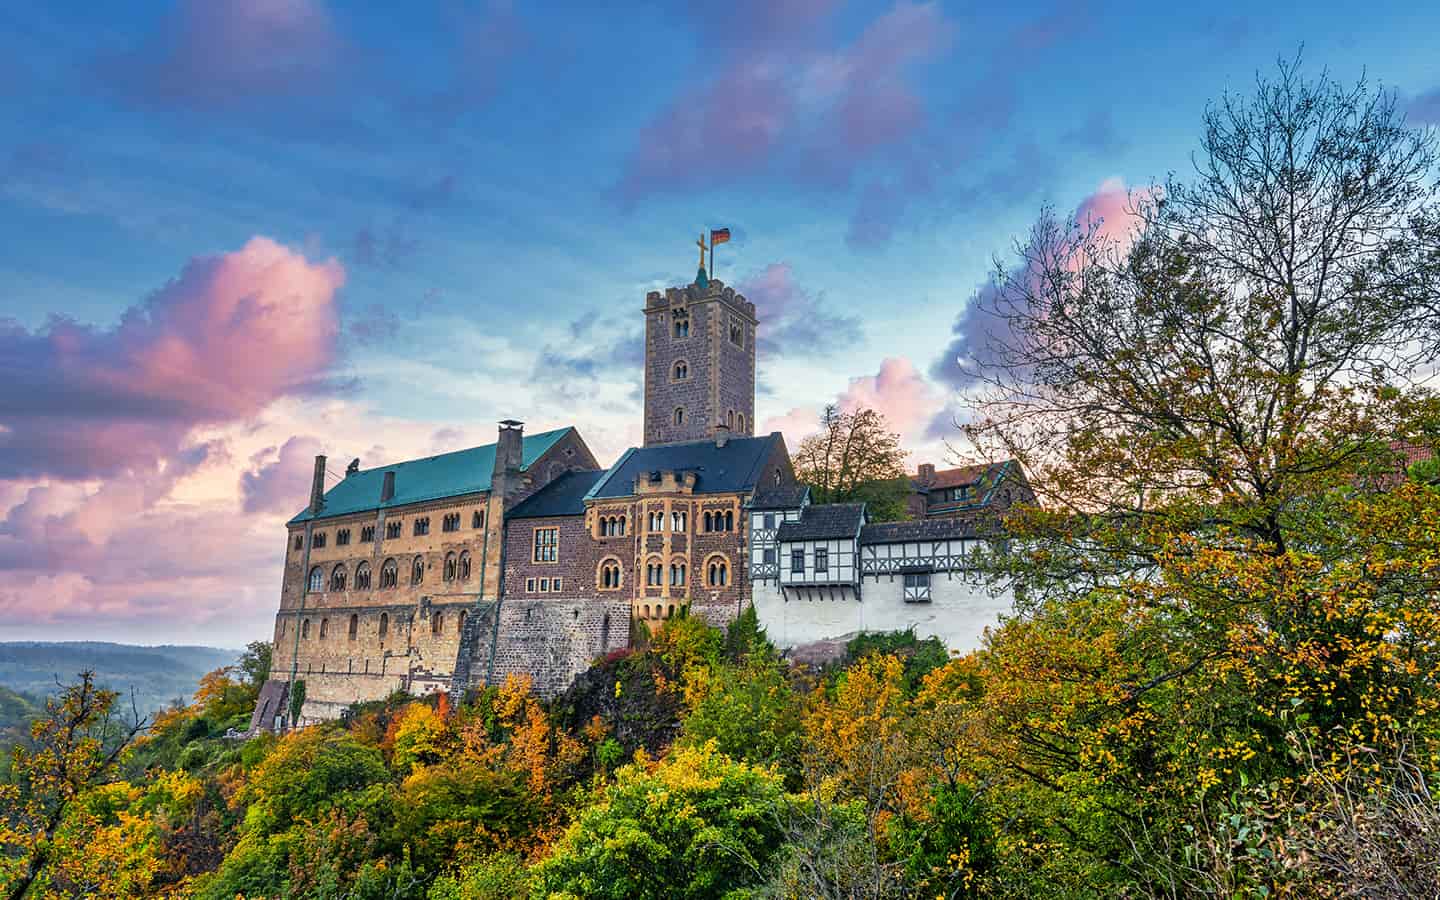 Panoramablick auf Wartburg Schloss im Thüringer Wald bei Eisenach, Thüringen